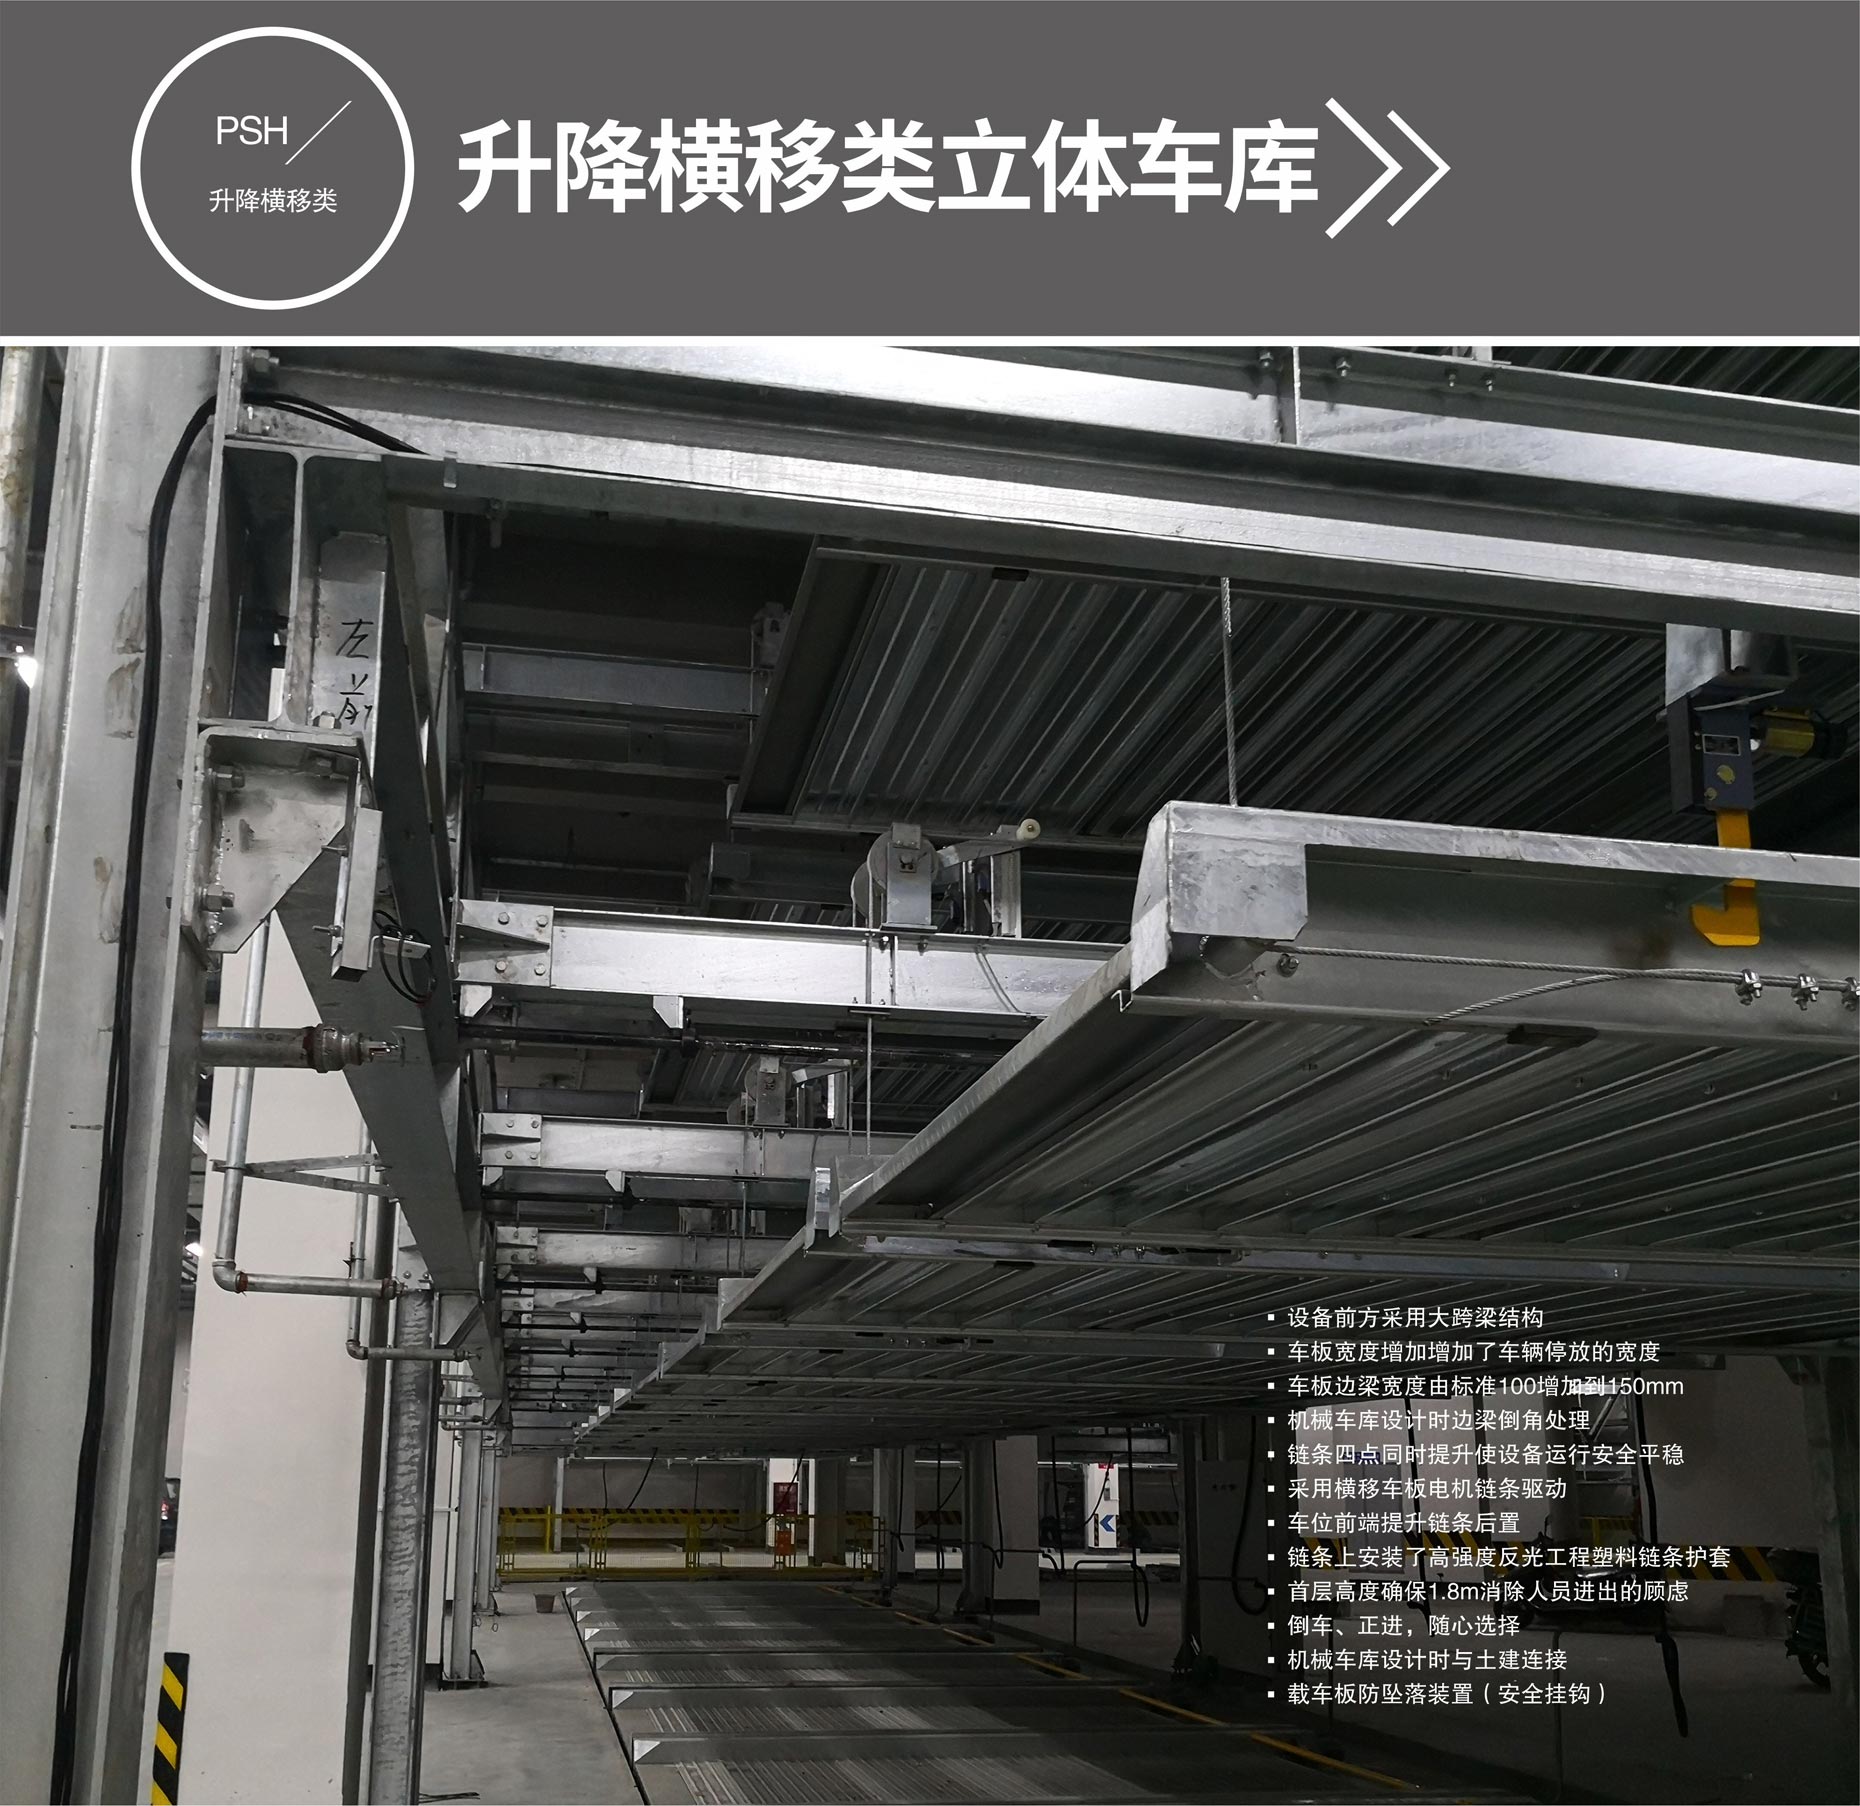 升降式機械式立體停車設備過驗收升降橫移式立體車庫